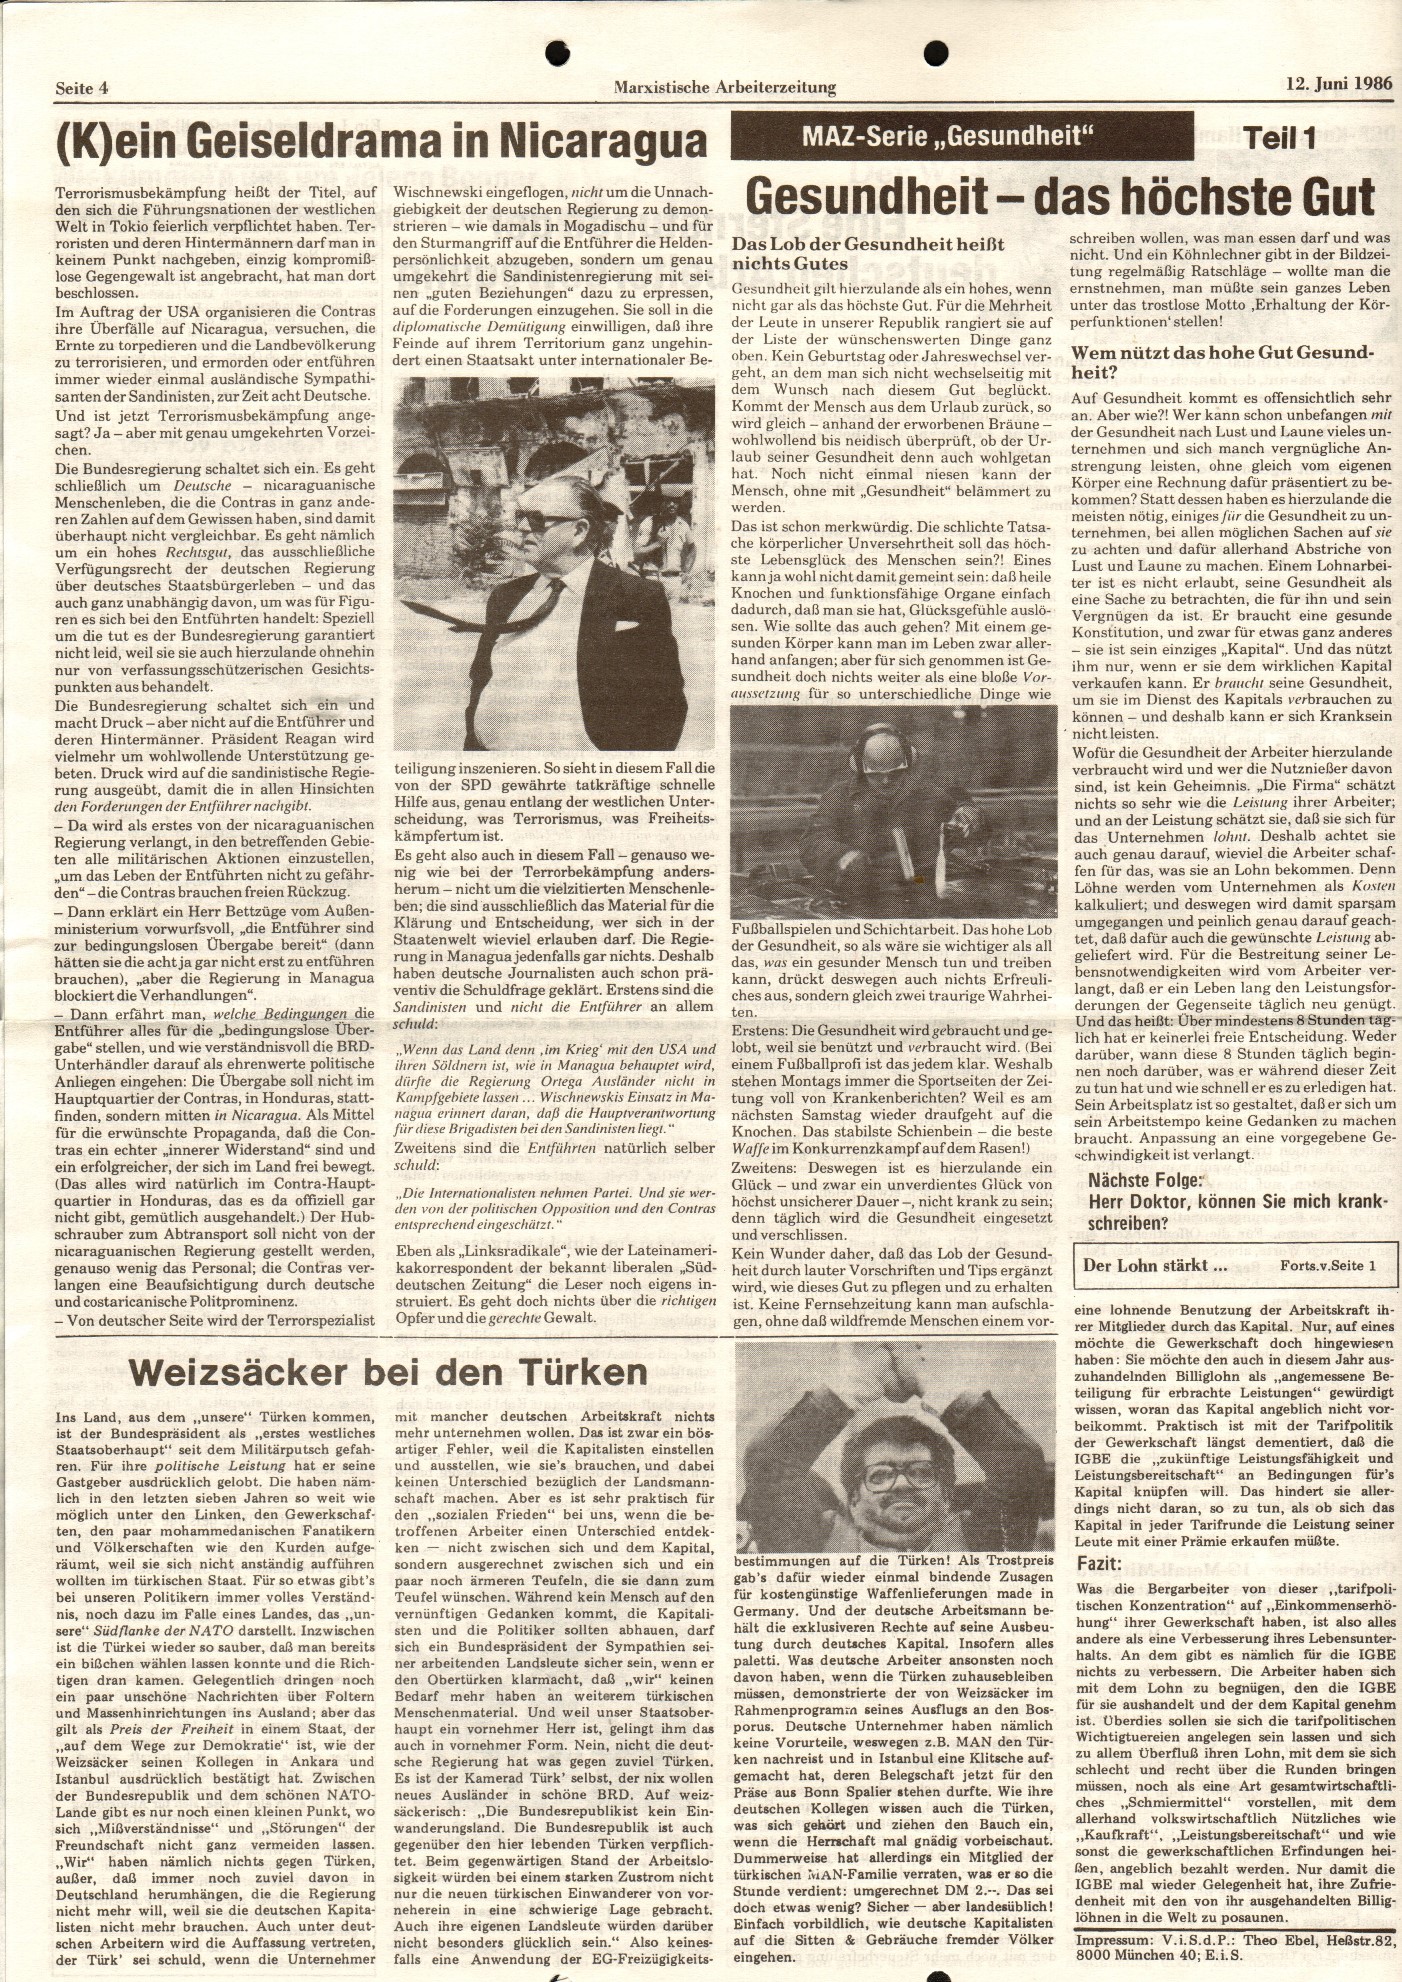 Ruhrgebiet_MG_Marxistische_Arbeiterzeitung_Bergbau_19860612_04